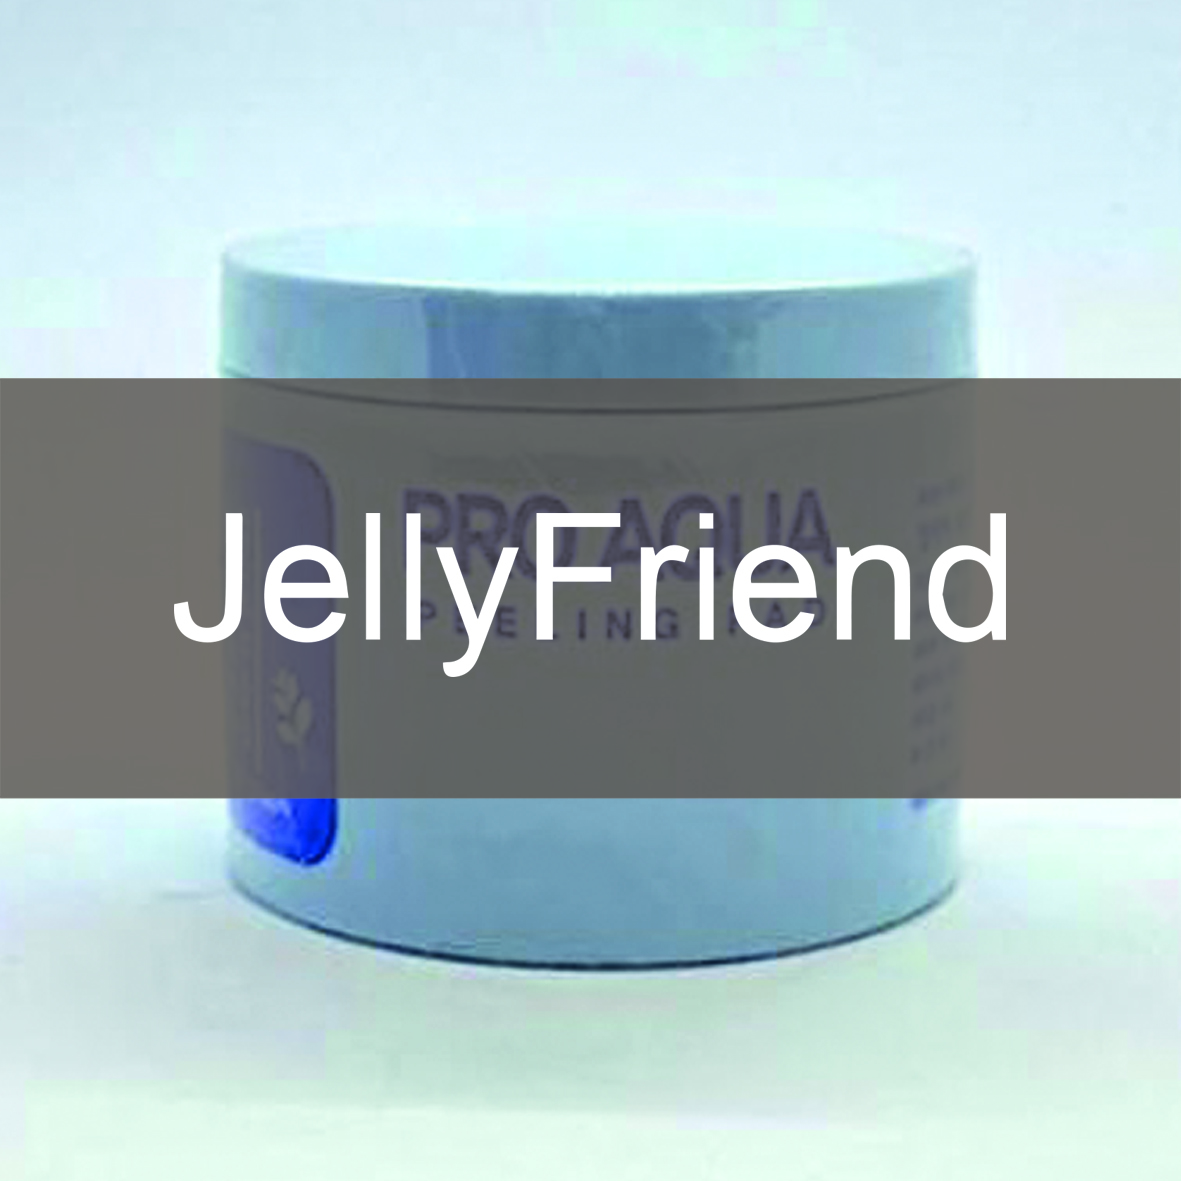 Jelly friend